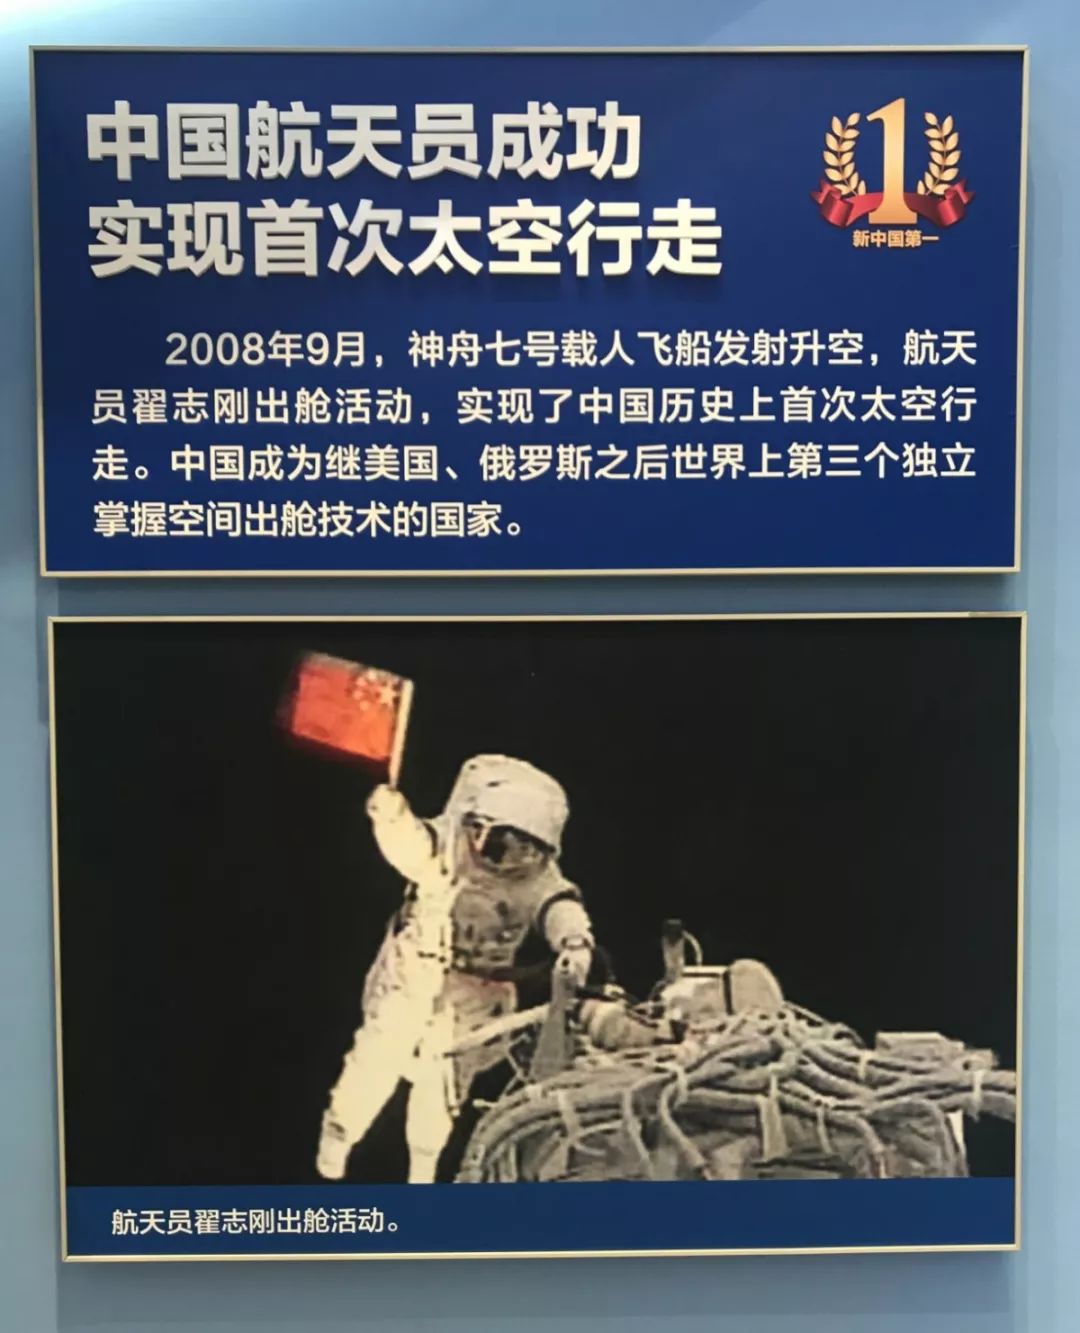 聂海胜、刘伯明、汤洪波3名航天员领命出征 - 国内动态 - 华声新闻 - 华声在线